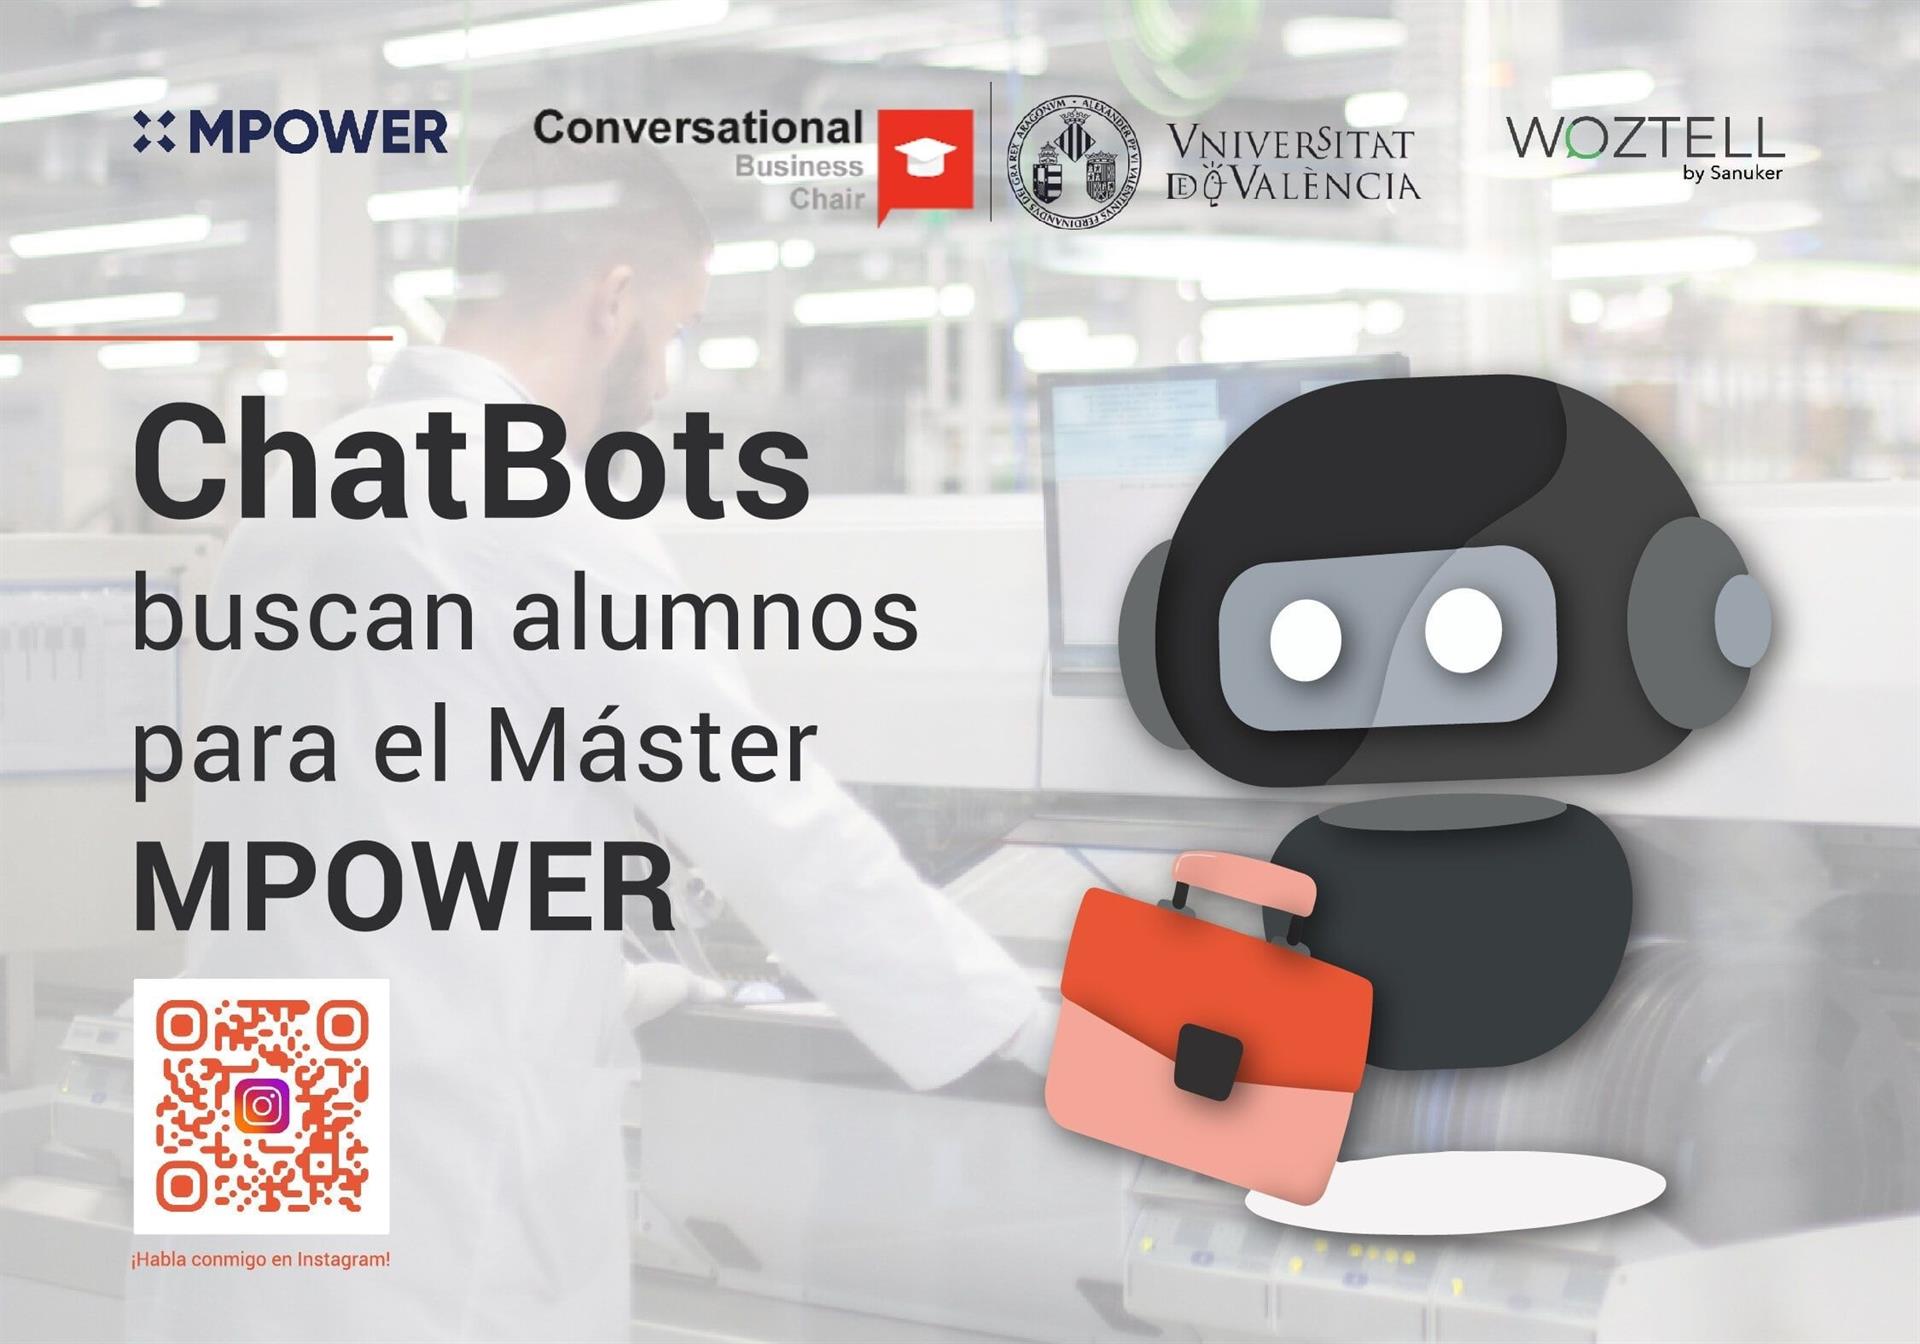 Chatbots buscan alumnos para el Máster MPOWER, ¡habla con ellos!